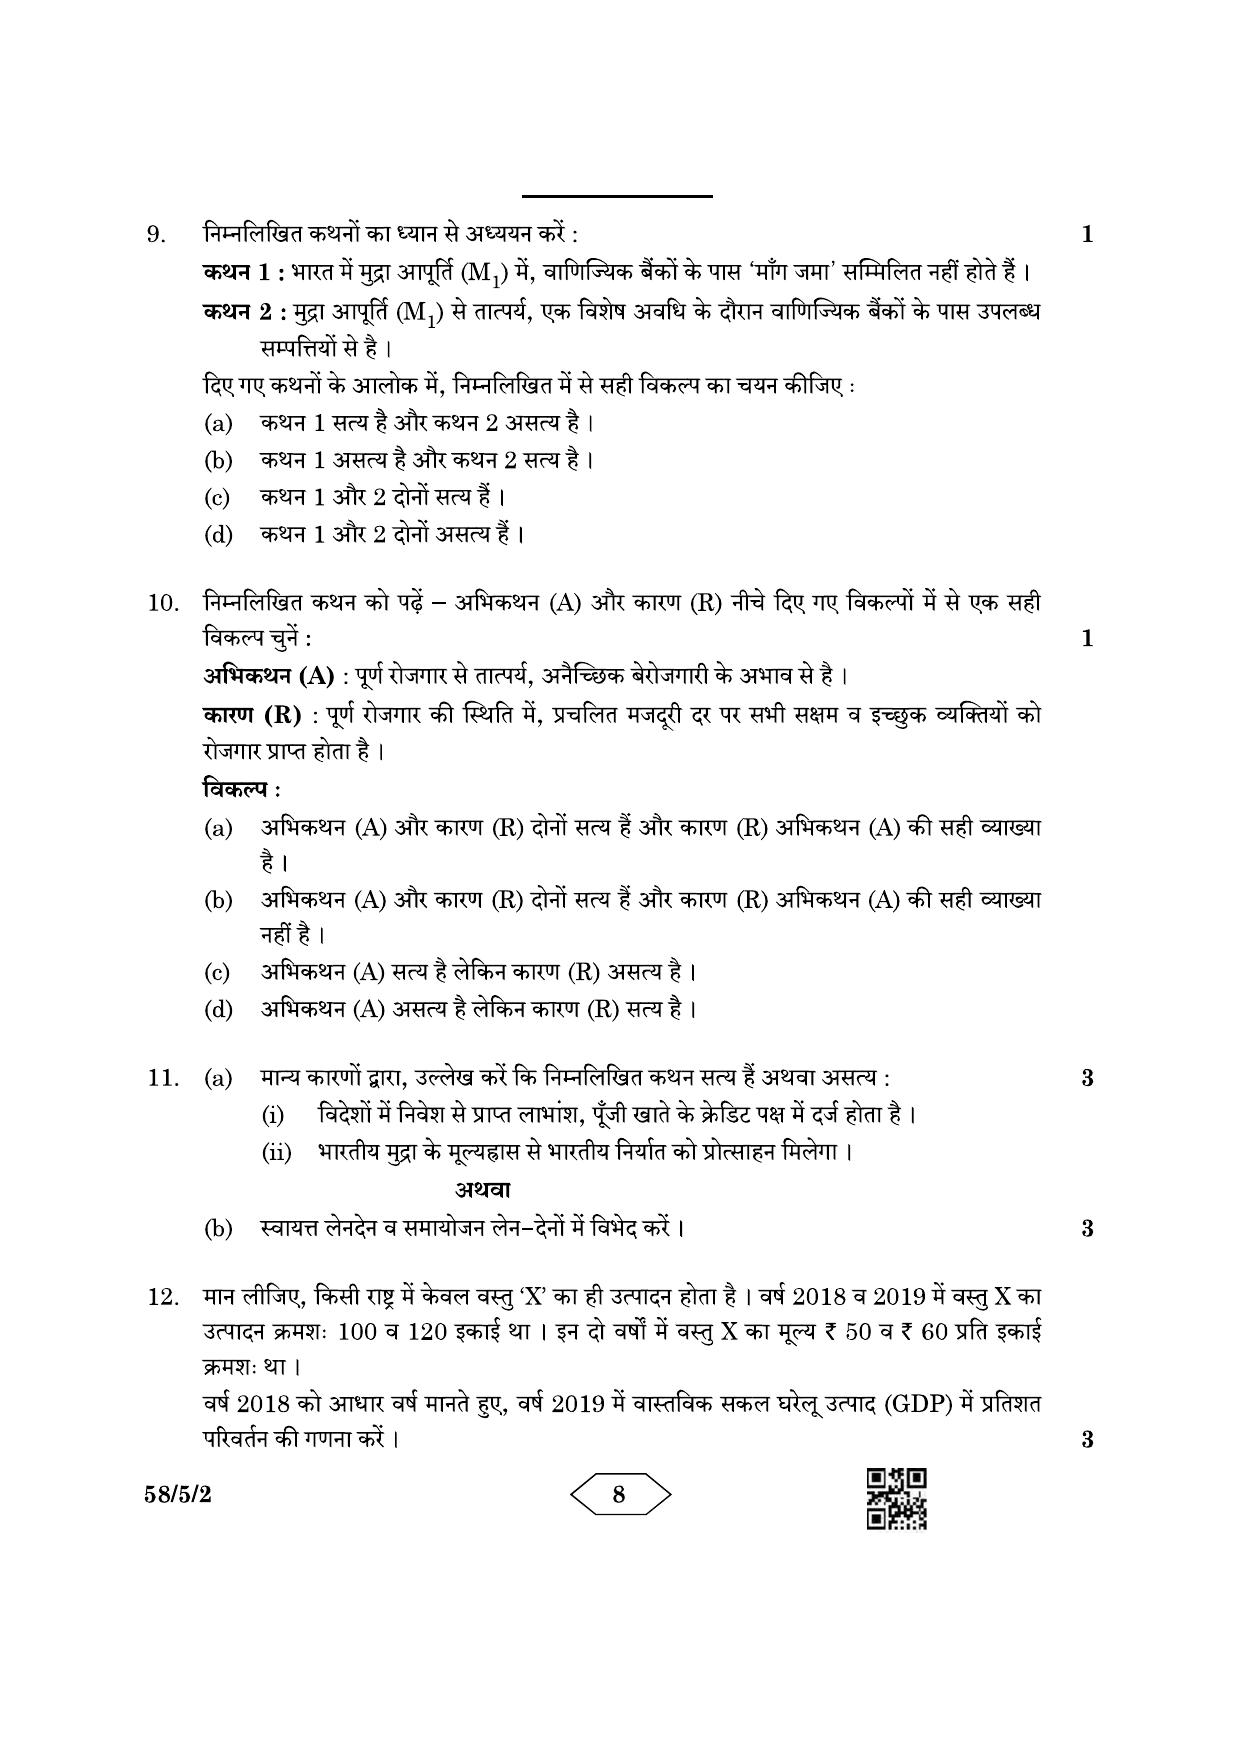 CBSE Class 12 58-5-2 Economics 2023 Question Paper - Page 8